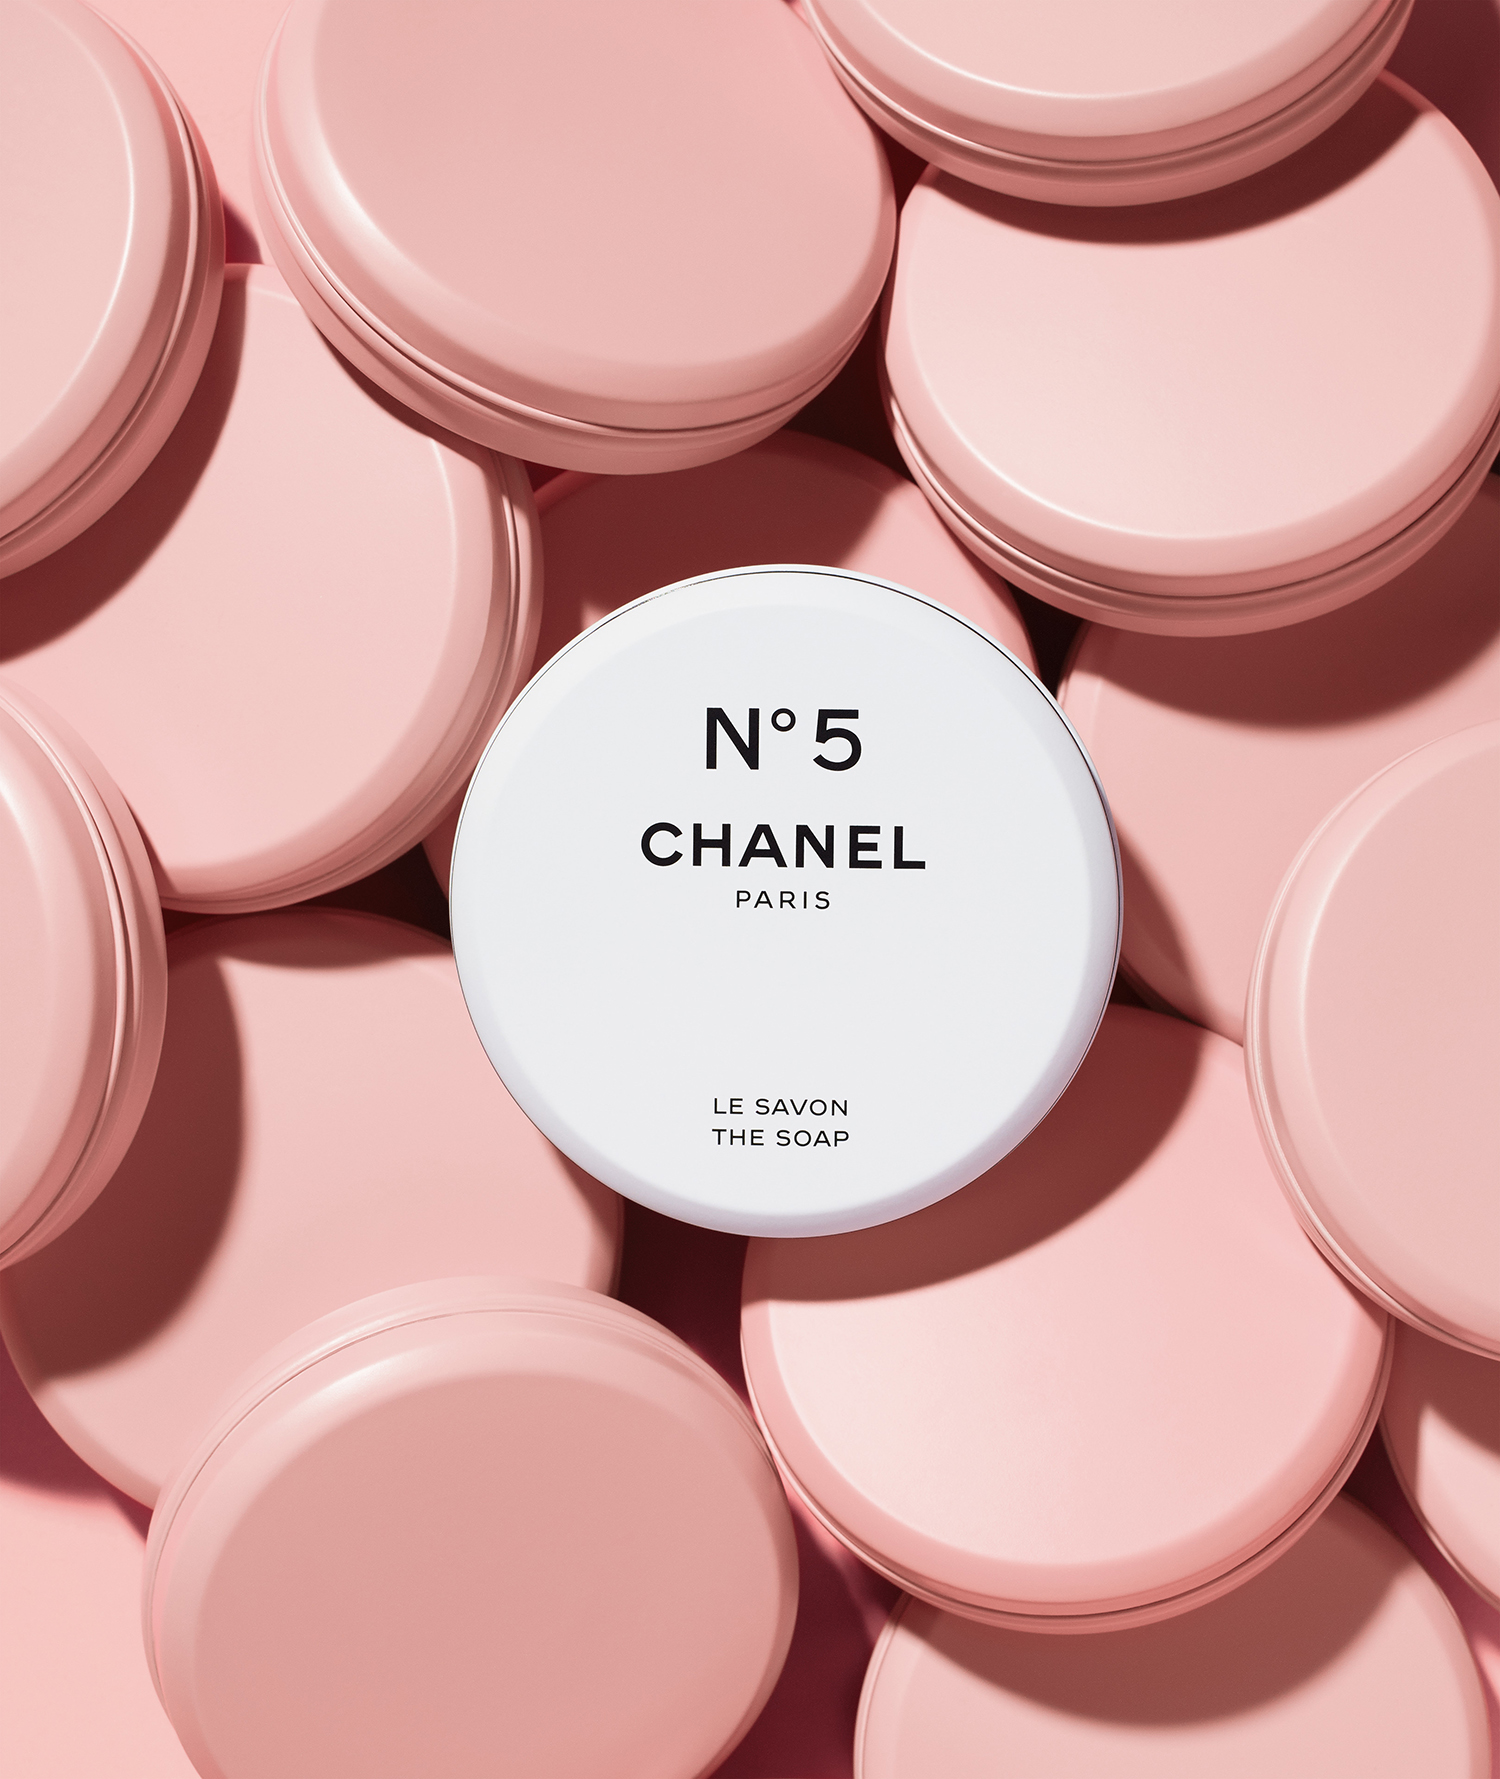 La nuova esperienza rivoluzionaria firmata Chanel Factory 5